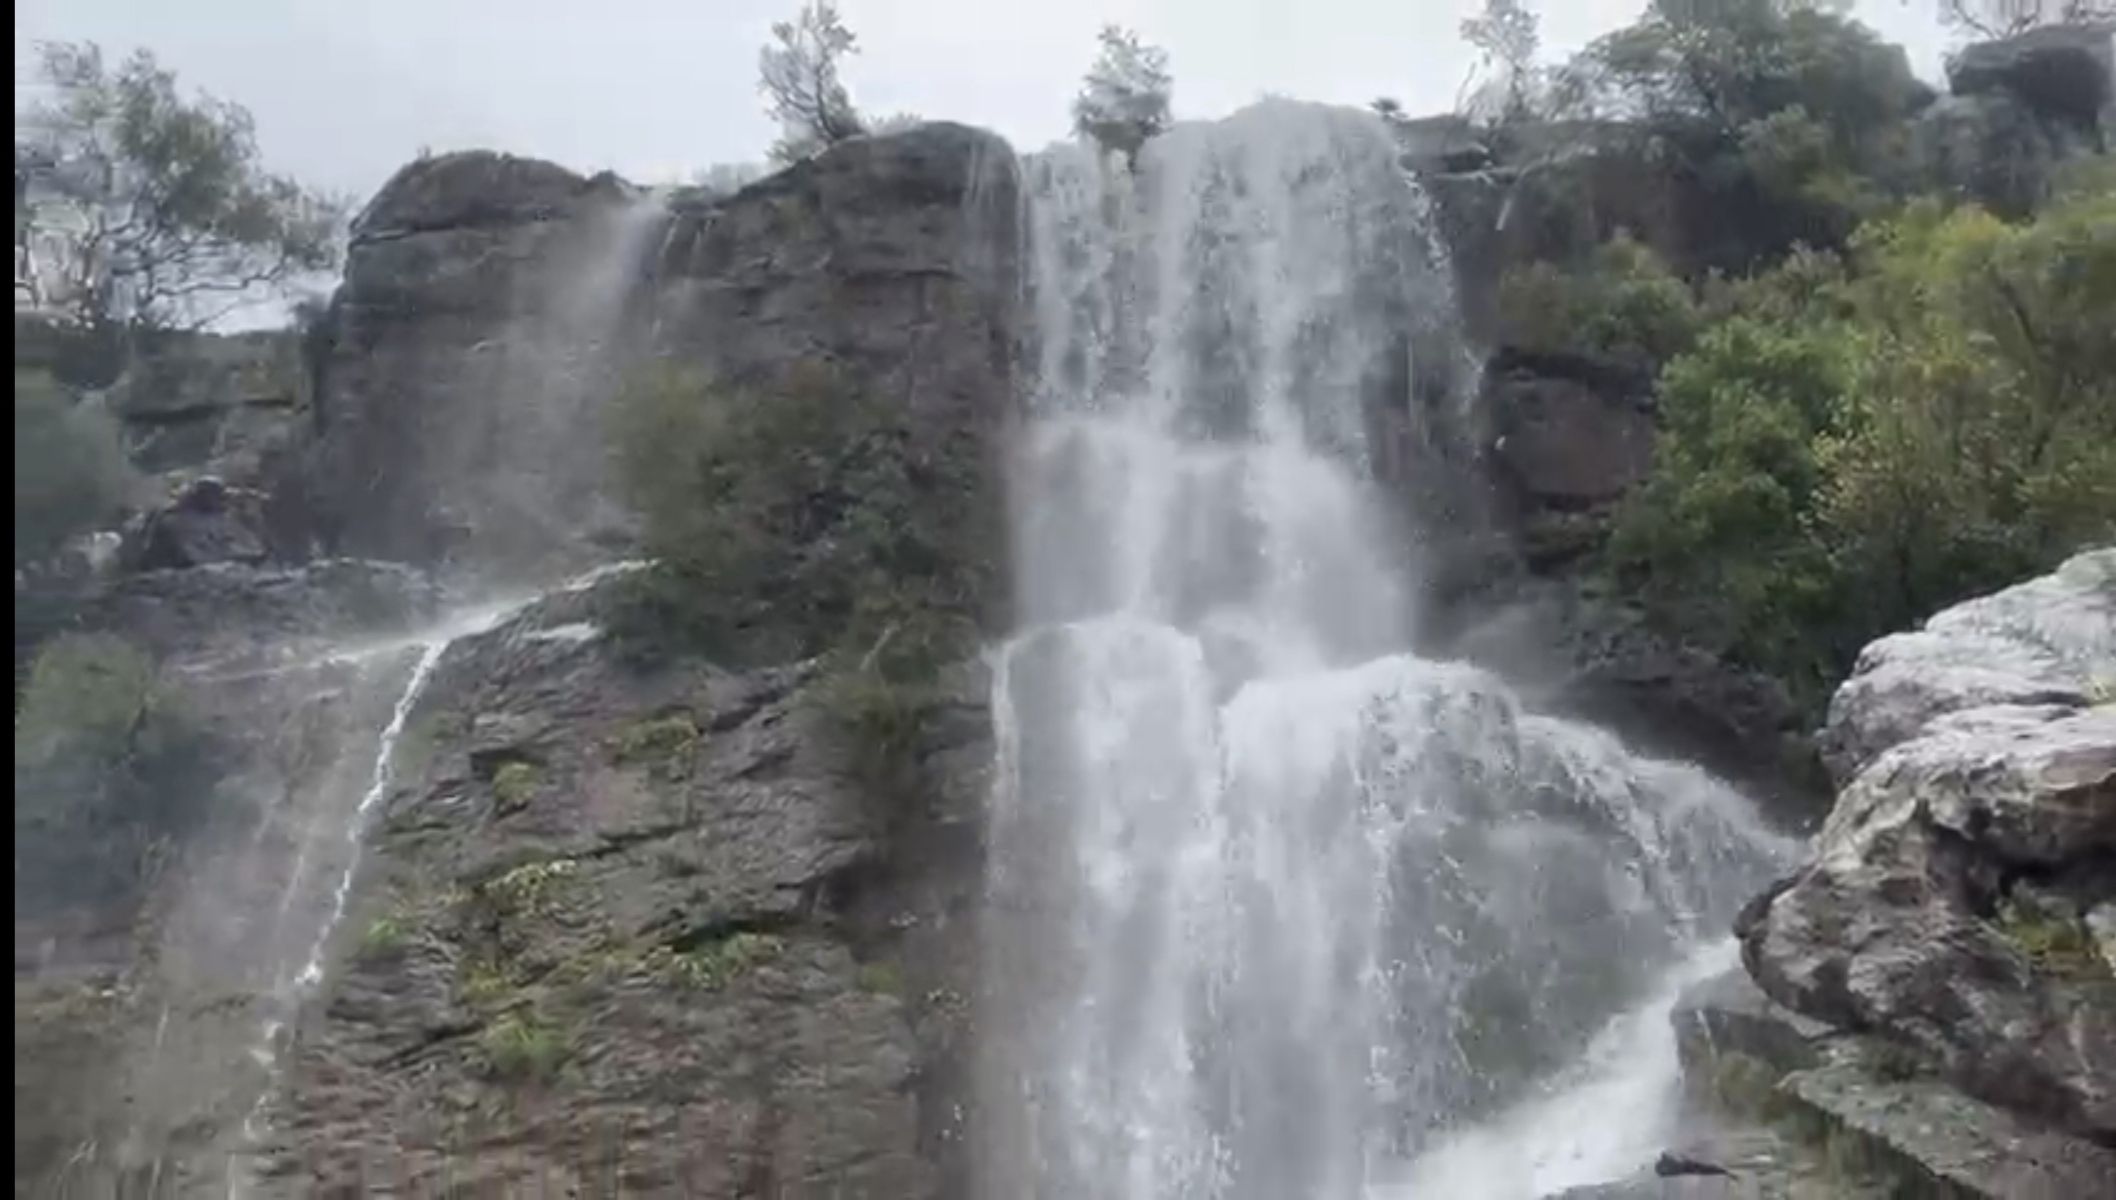 La cascada de El Chorrero, en Villaluenga, un ejemplo tras las últimas lluvias.